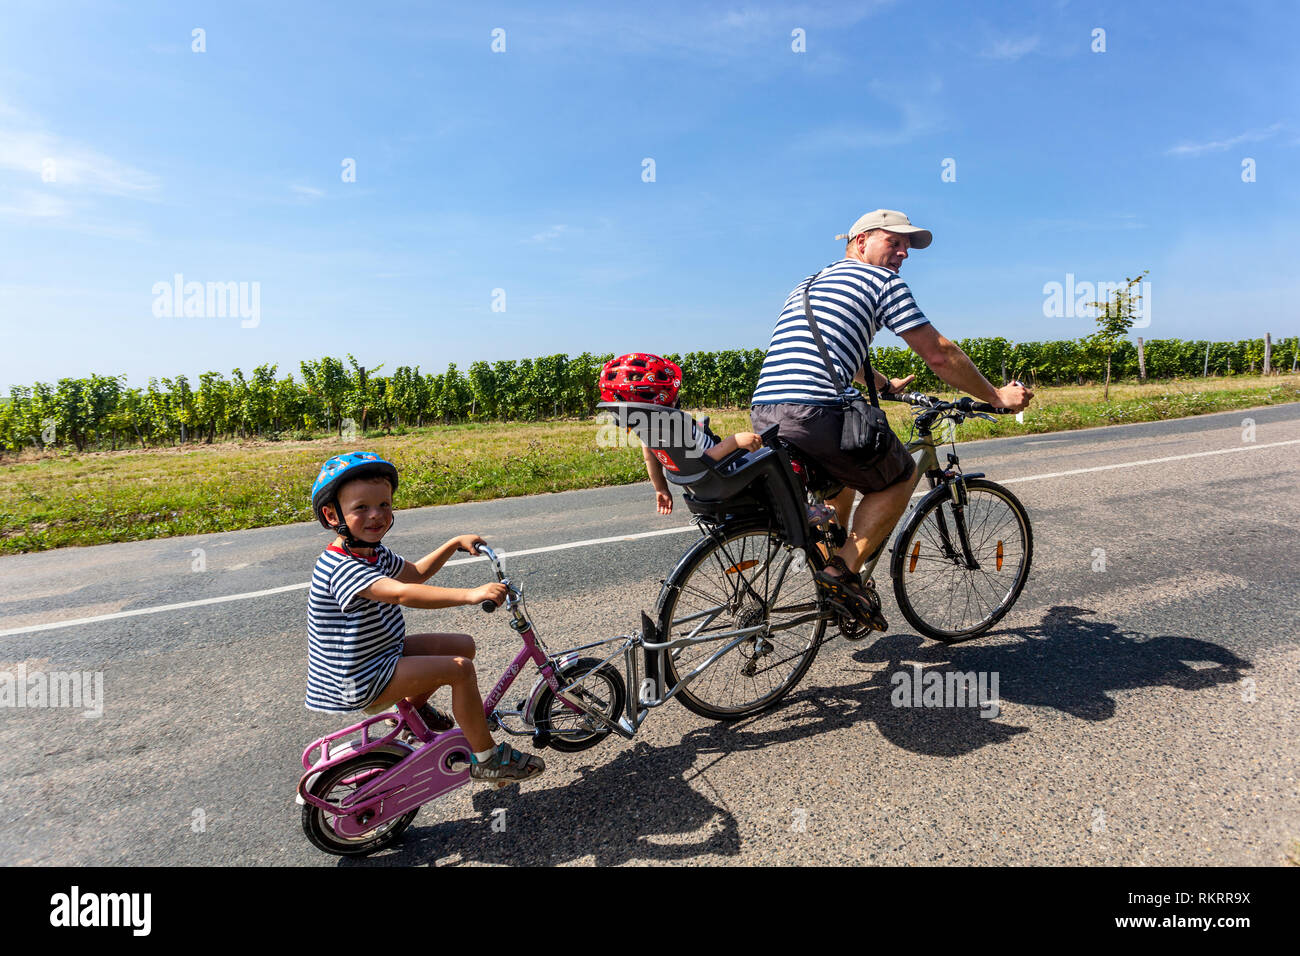 Paseo en bicicleta de la familia en el campo, padre con dos niños en casco en la carretera, asiento portabicicletas Foto de stock